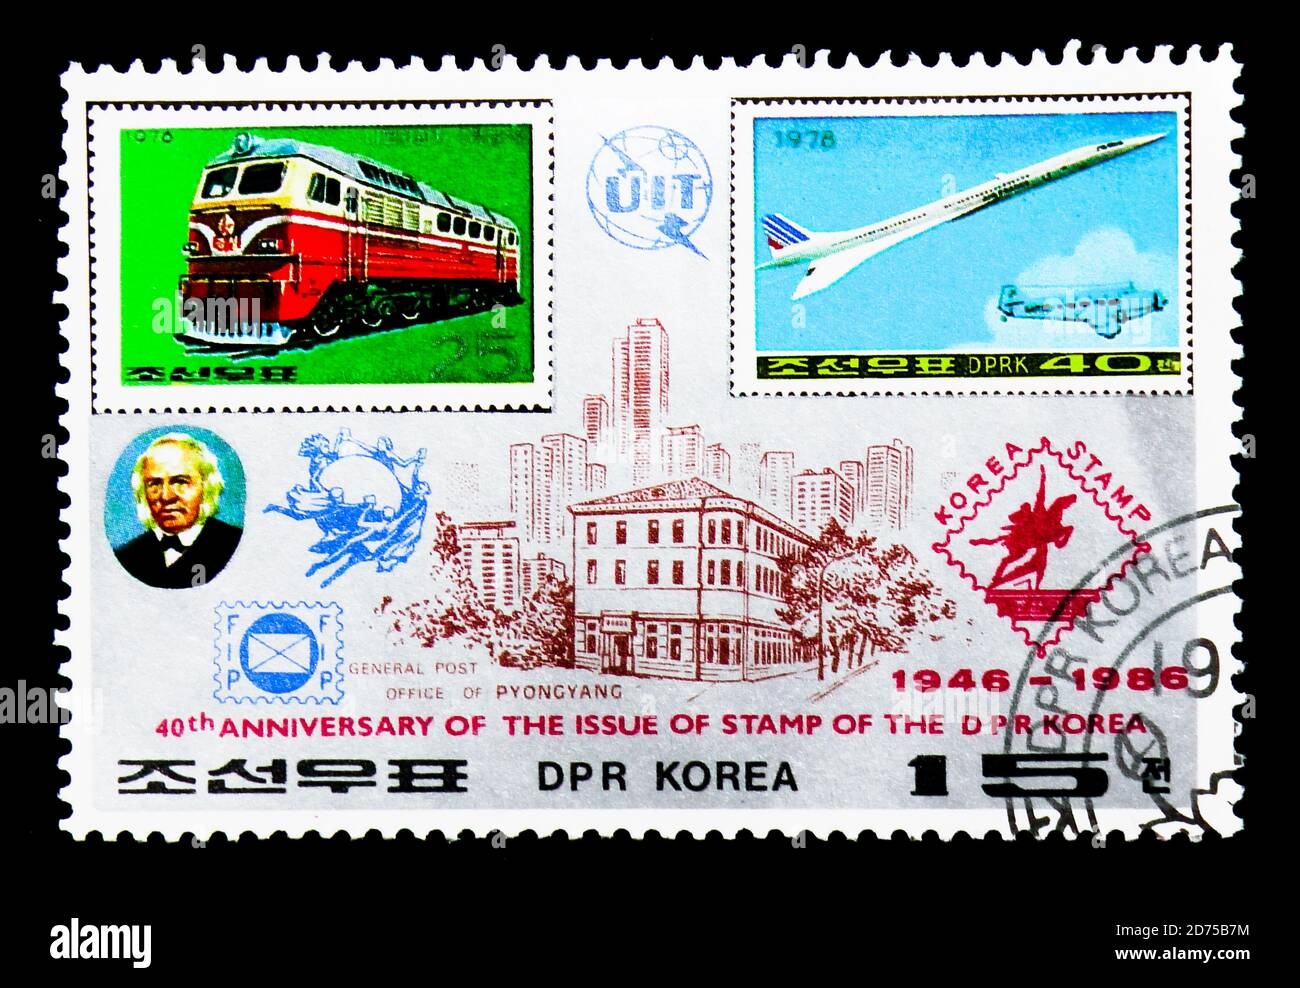 MOSCOU, RUSSIE - 25 NOVEMBRE 2017 : un timbre imprimé en république populaire démocratique de Corée montre des timbres nord-coréens MINR. 1559 et 1787, 40ème année Banque D'Images